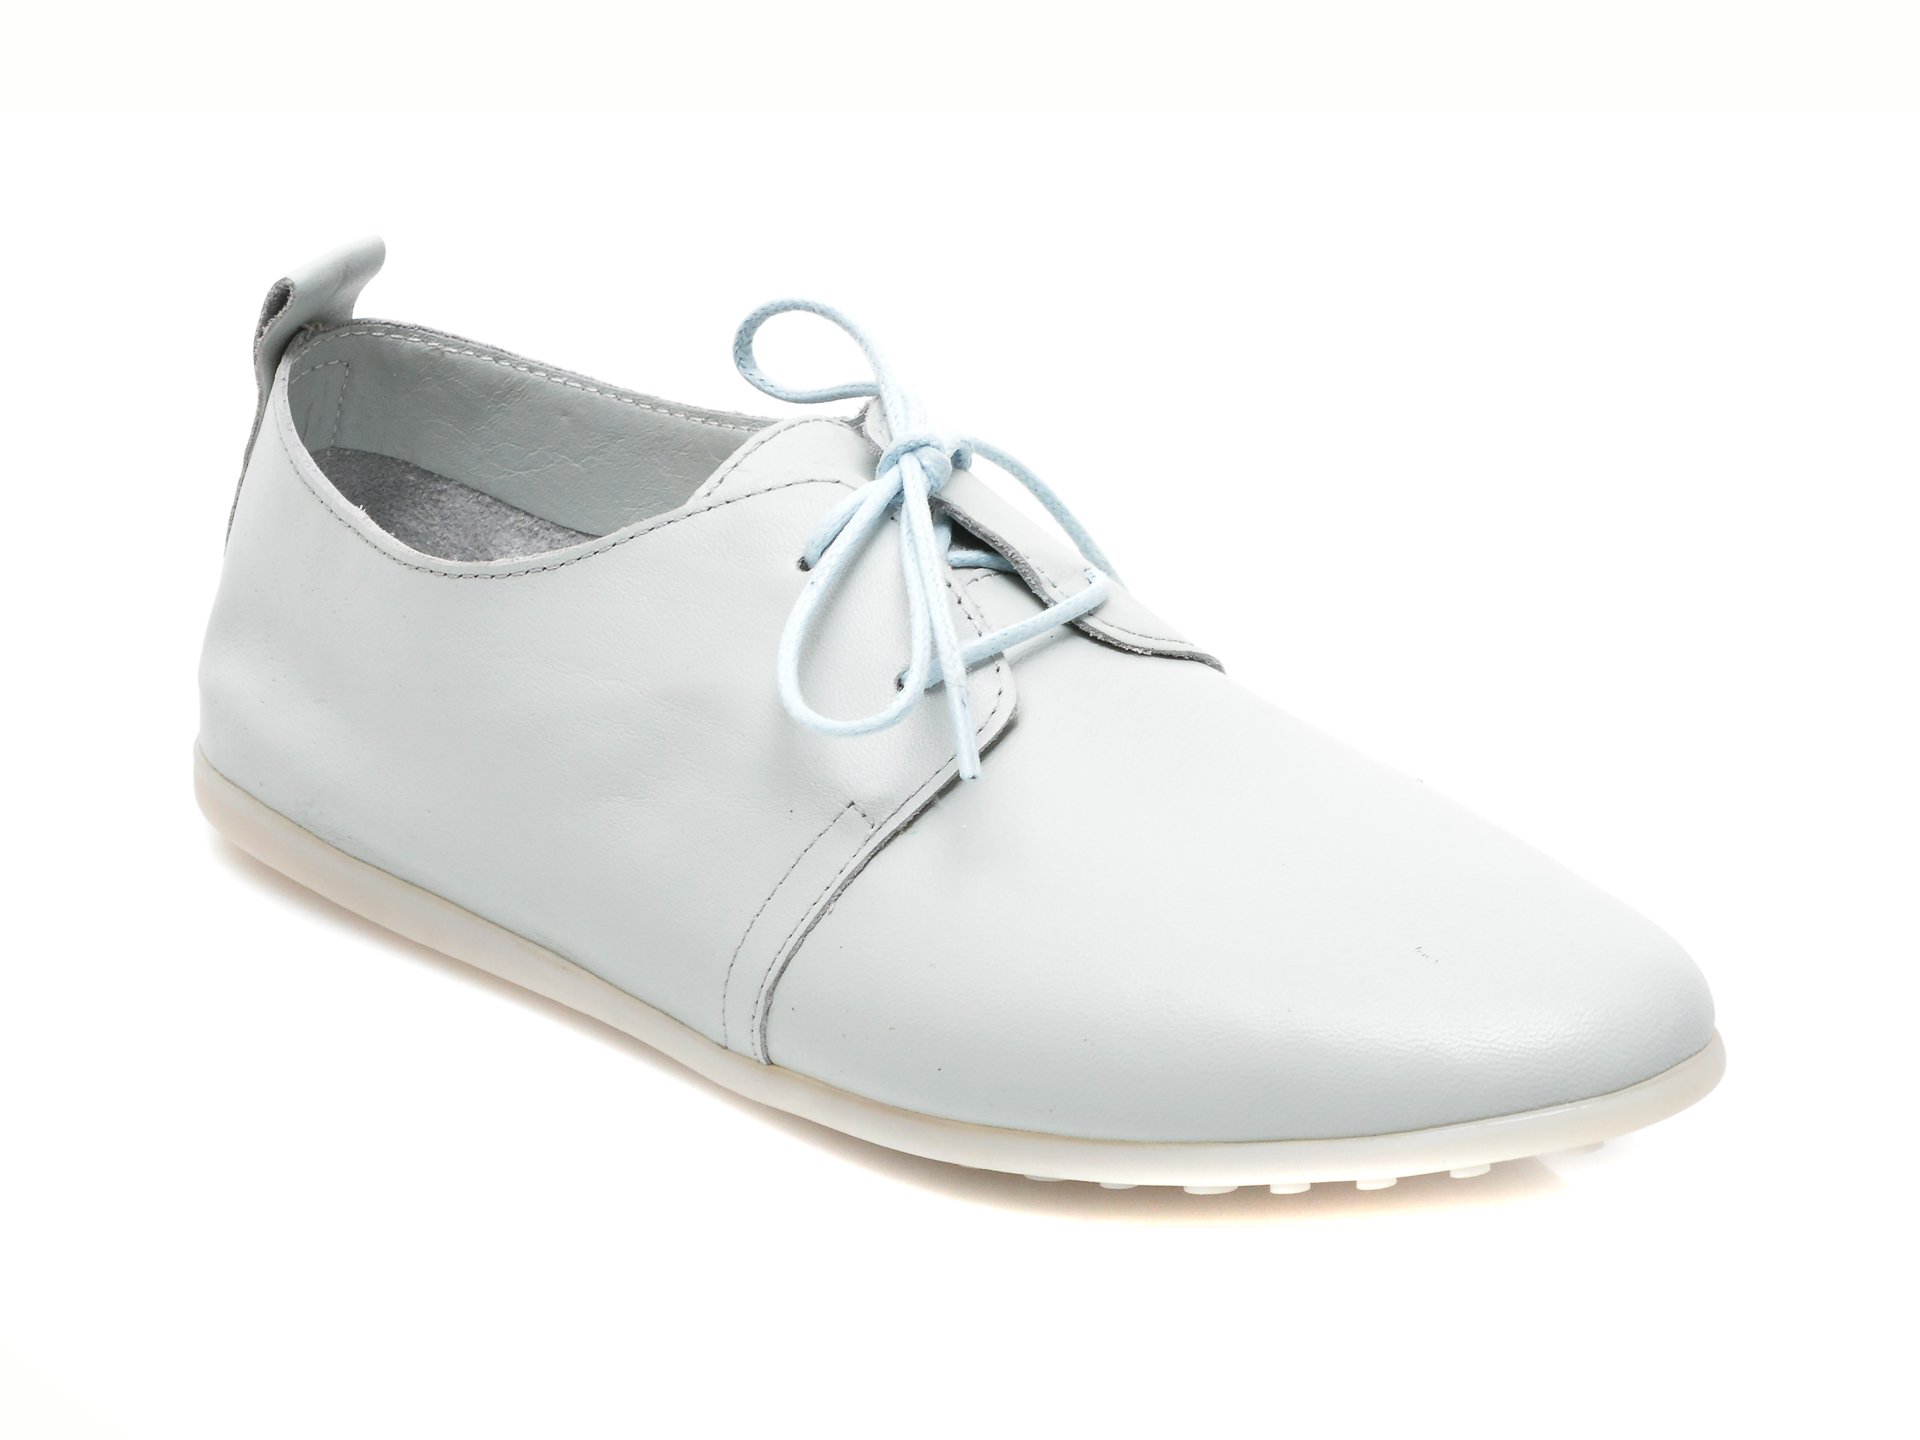 Pantofi FLAVIA PASSINI gri, 91, din piele naturala Flavia Passini imagine noua